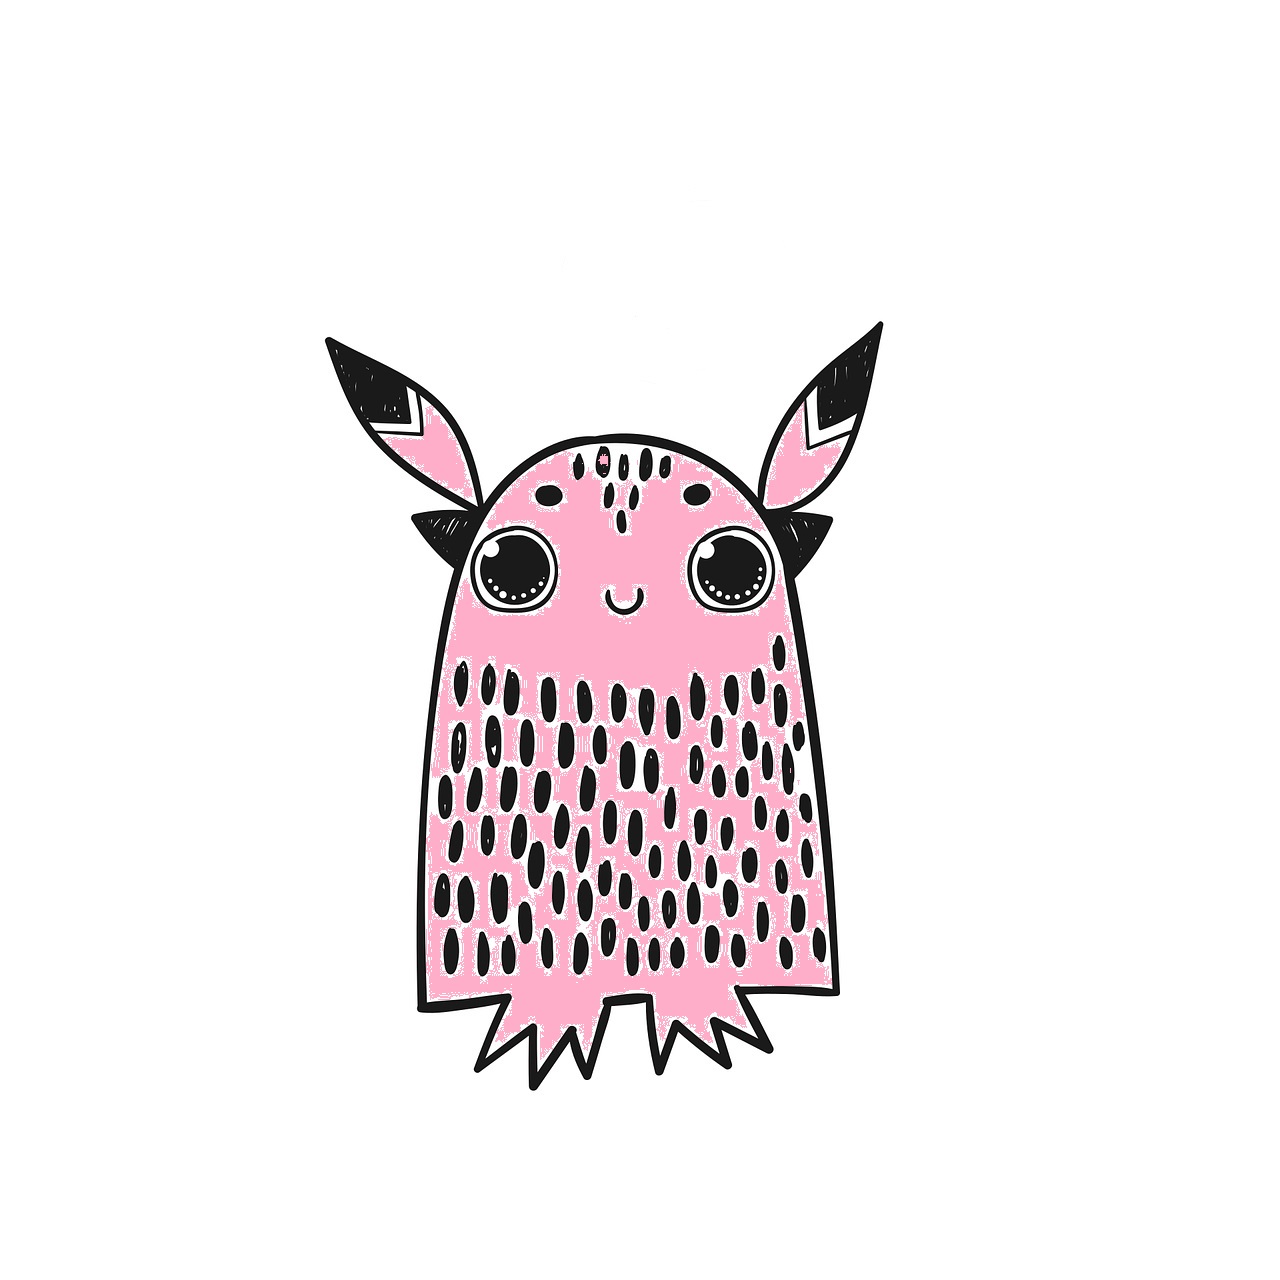 Monstruo rosa con forma acampanada, con orejas puntiagudas, sin brazos y pies pequeños. Los ojos son grandes y está sonriendo